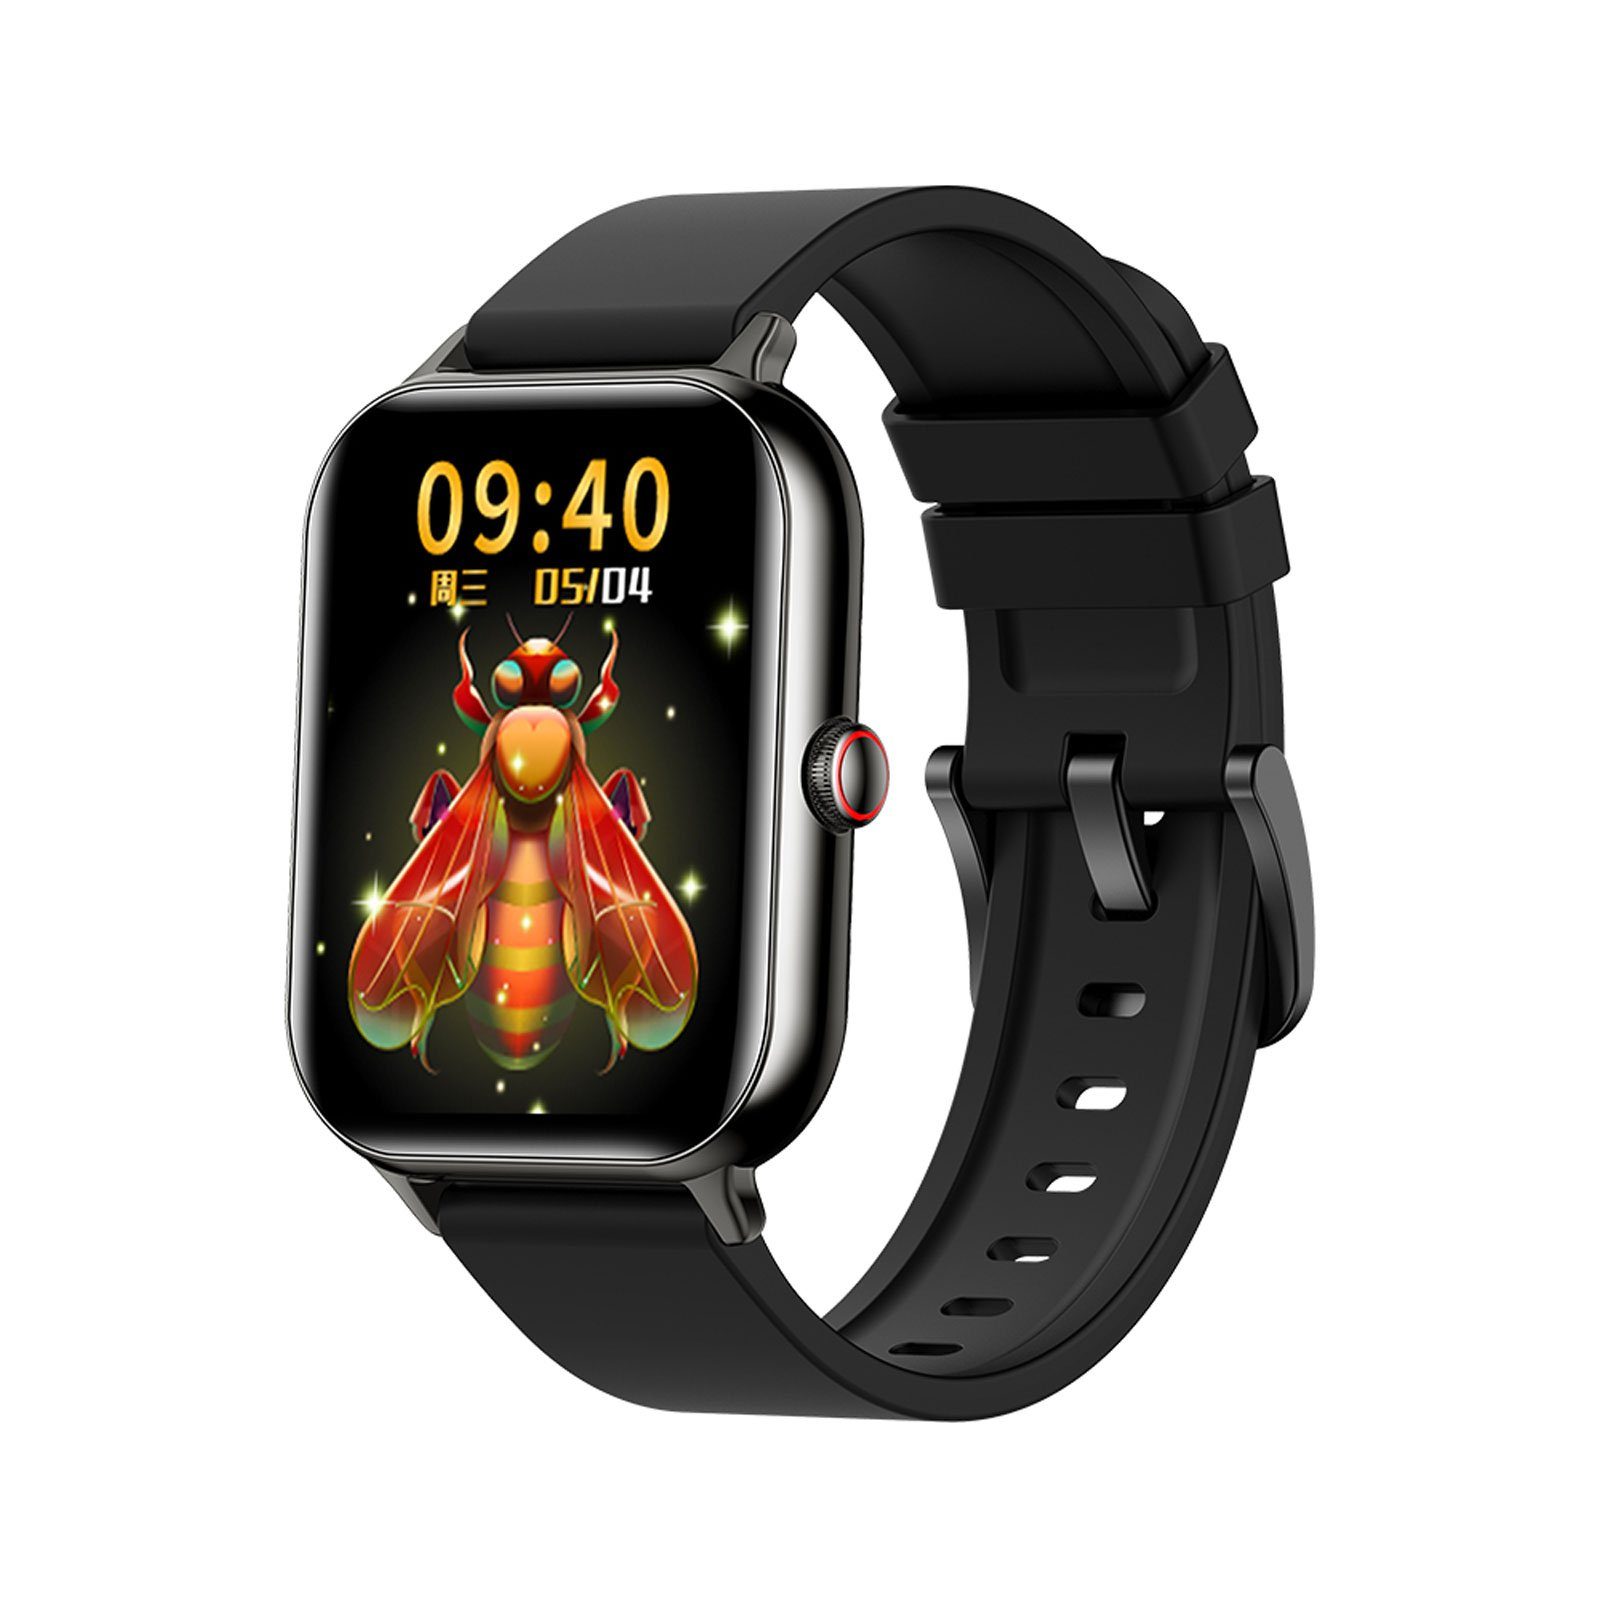 OKWISH Damen Herren Smart Watch Sportuhr Armbanduhr Fitness Uhr Uhren Tracker Smartwatch (1,91 Zoll) Sportuhr mit 100+ Sportmodi, Touchscreen, IP68 Wasserdicht, Bluetooth Anrufe, iOS/Android, mit Pulsmesser Schrittzähler Schlafmonitor Aktivitätstracker